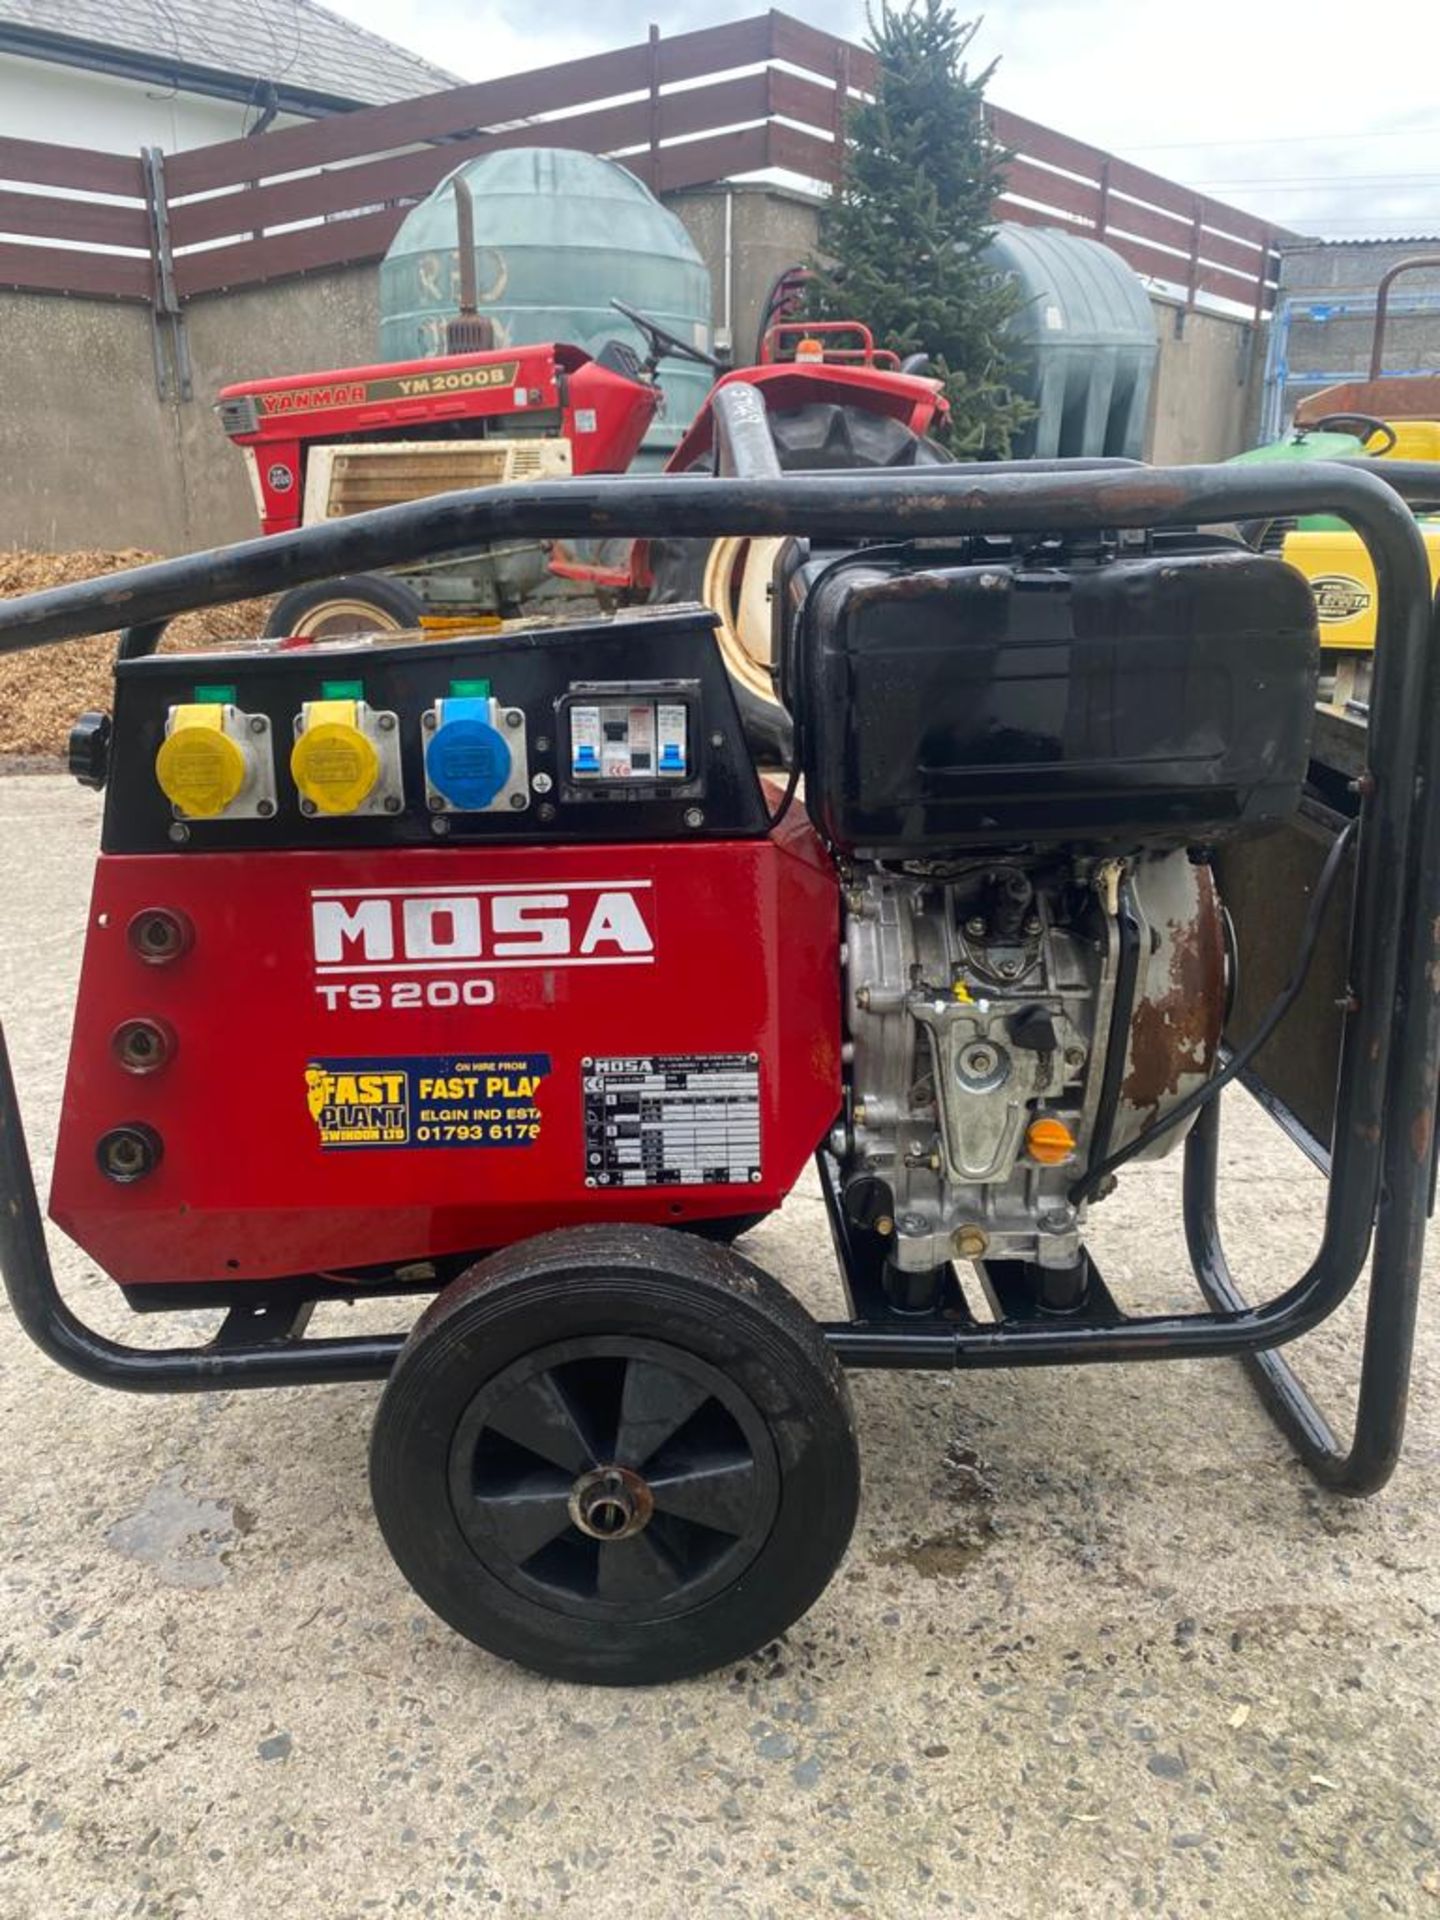 mosa diesel welder generator .location N Ireland. - Image 5 of 5